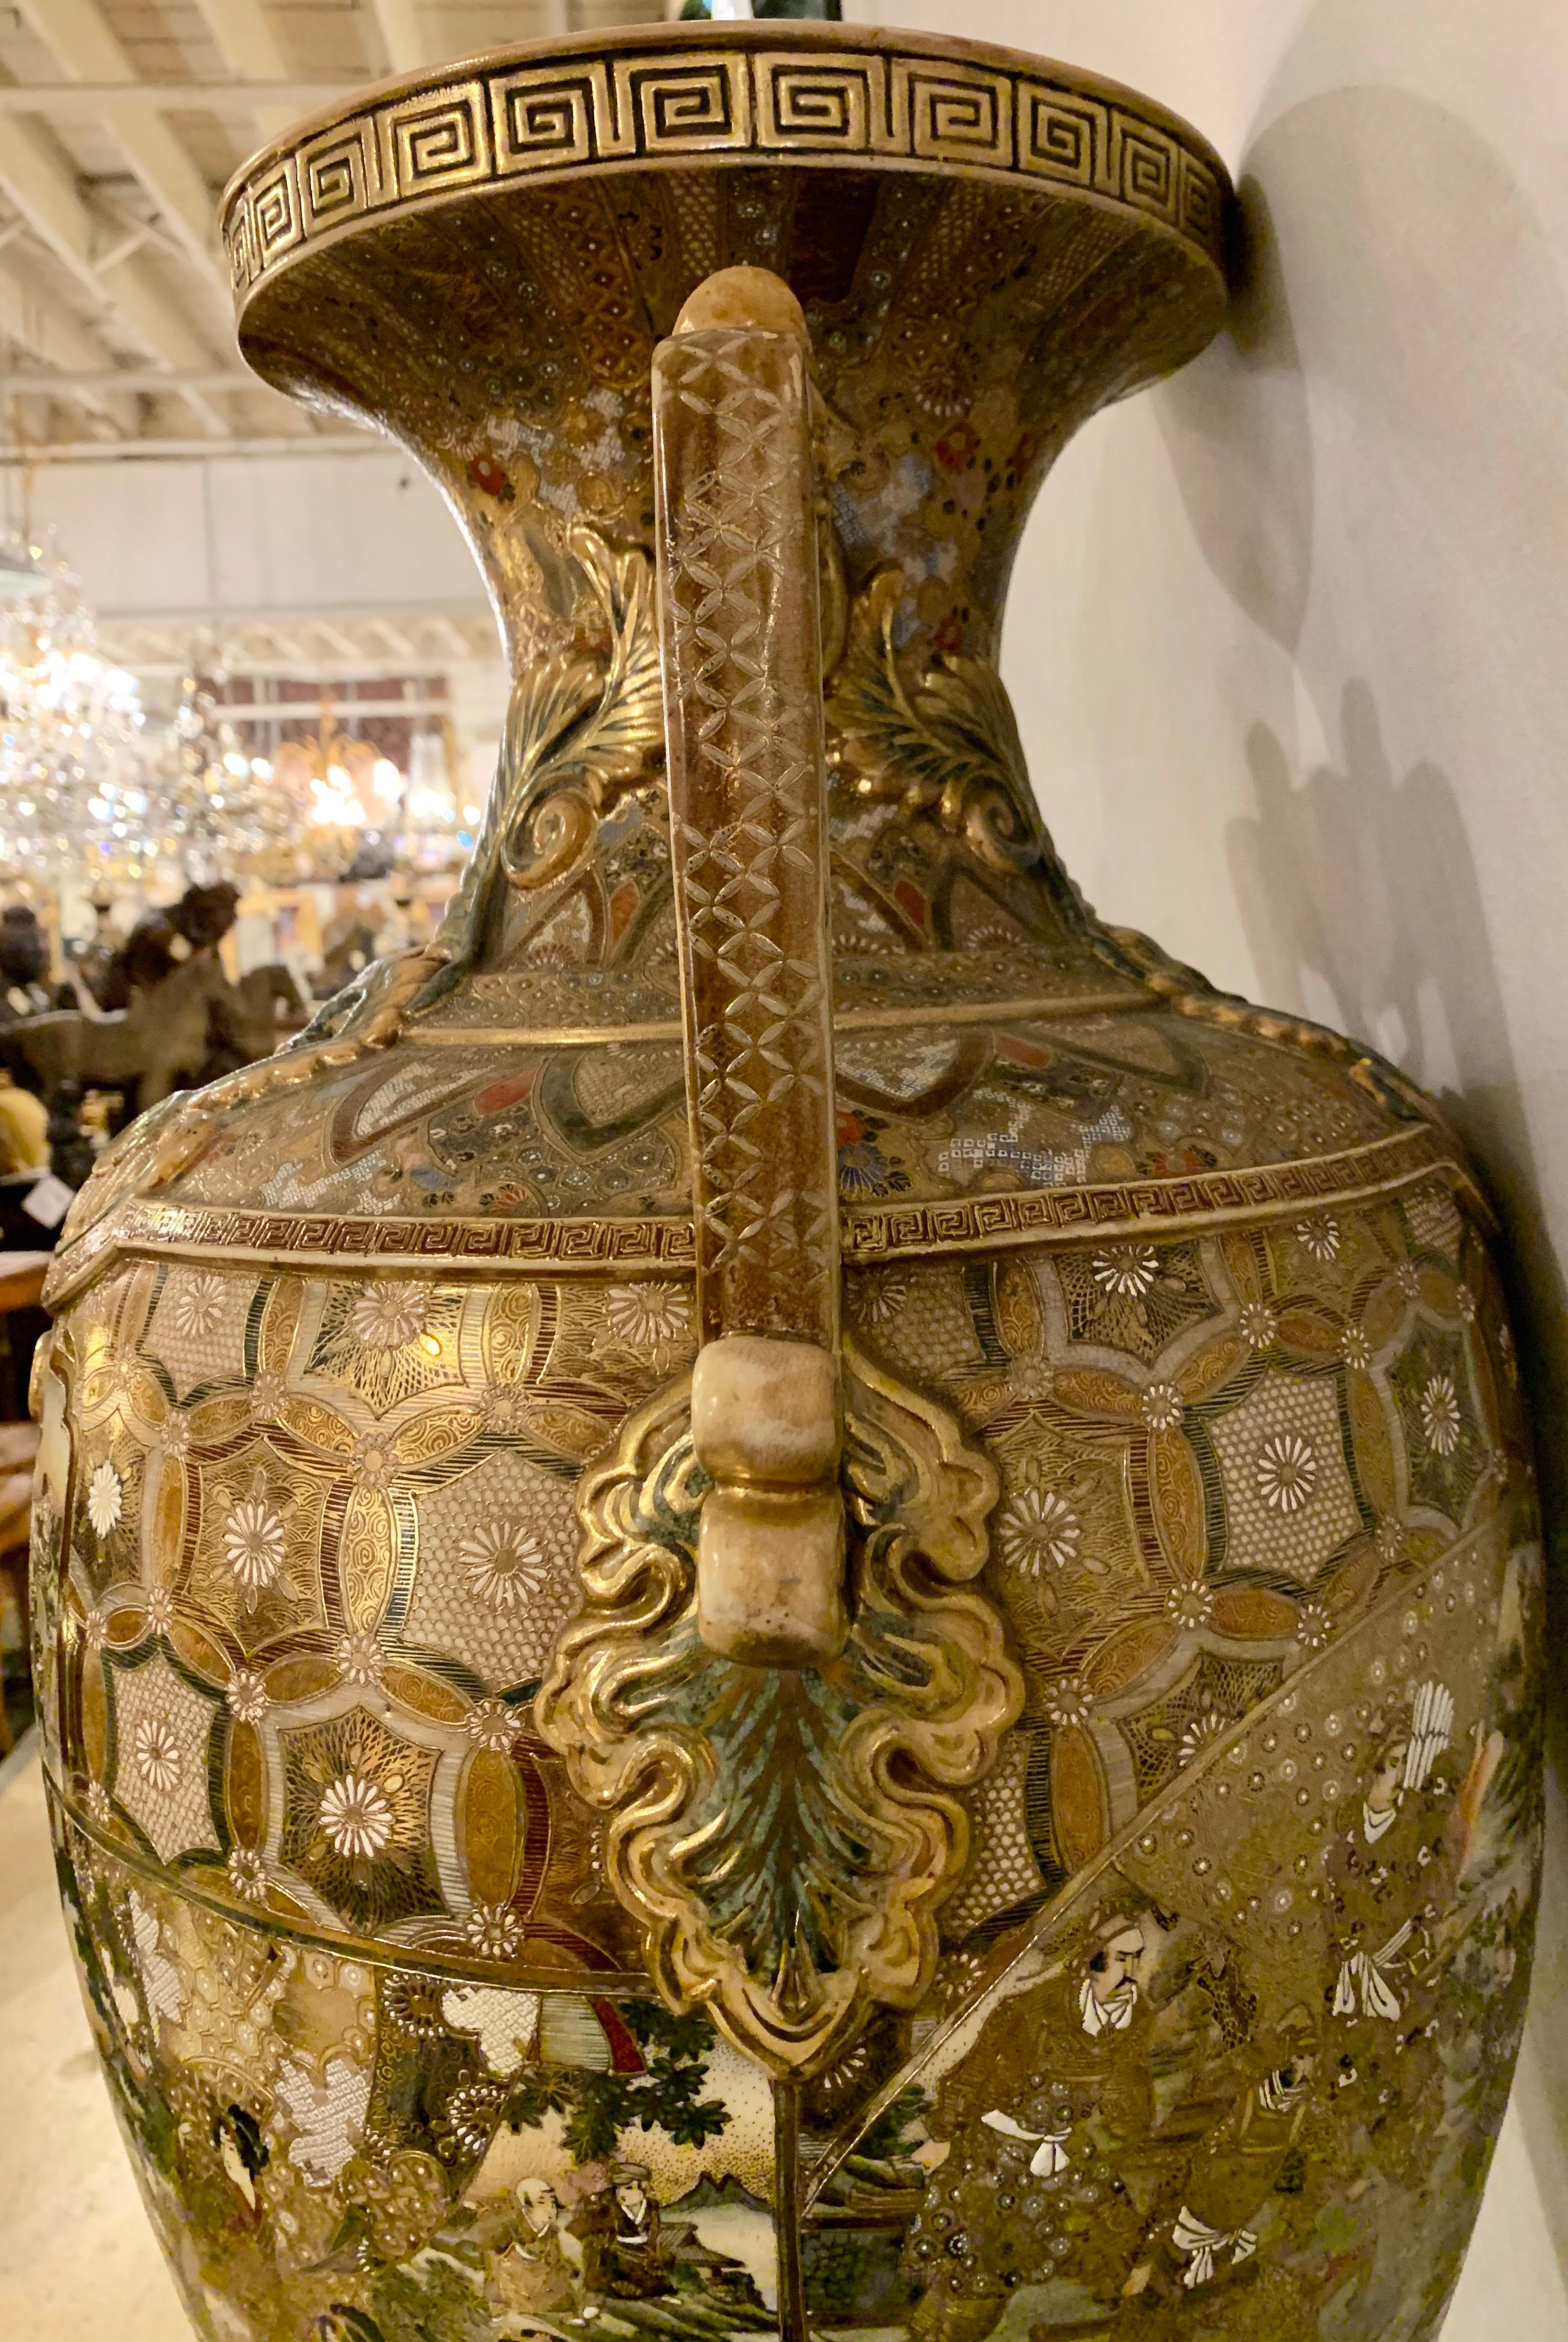 Satsuma Thousand Face Vase or Urn Palace Sized Twin Handled 2